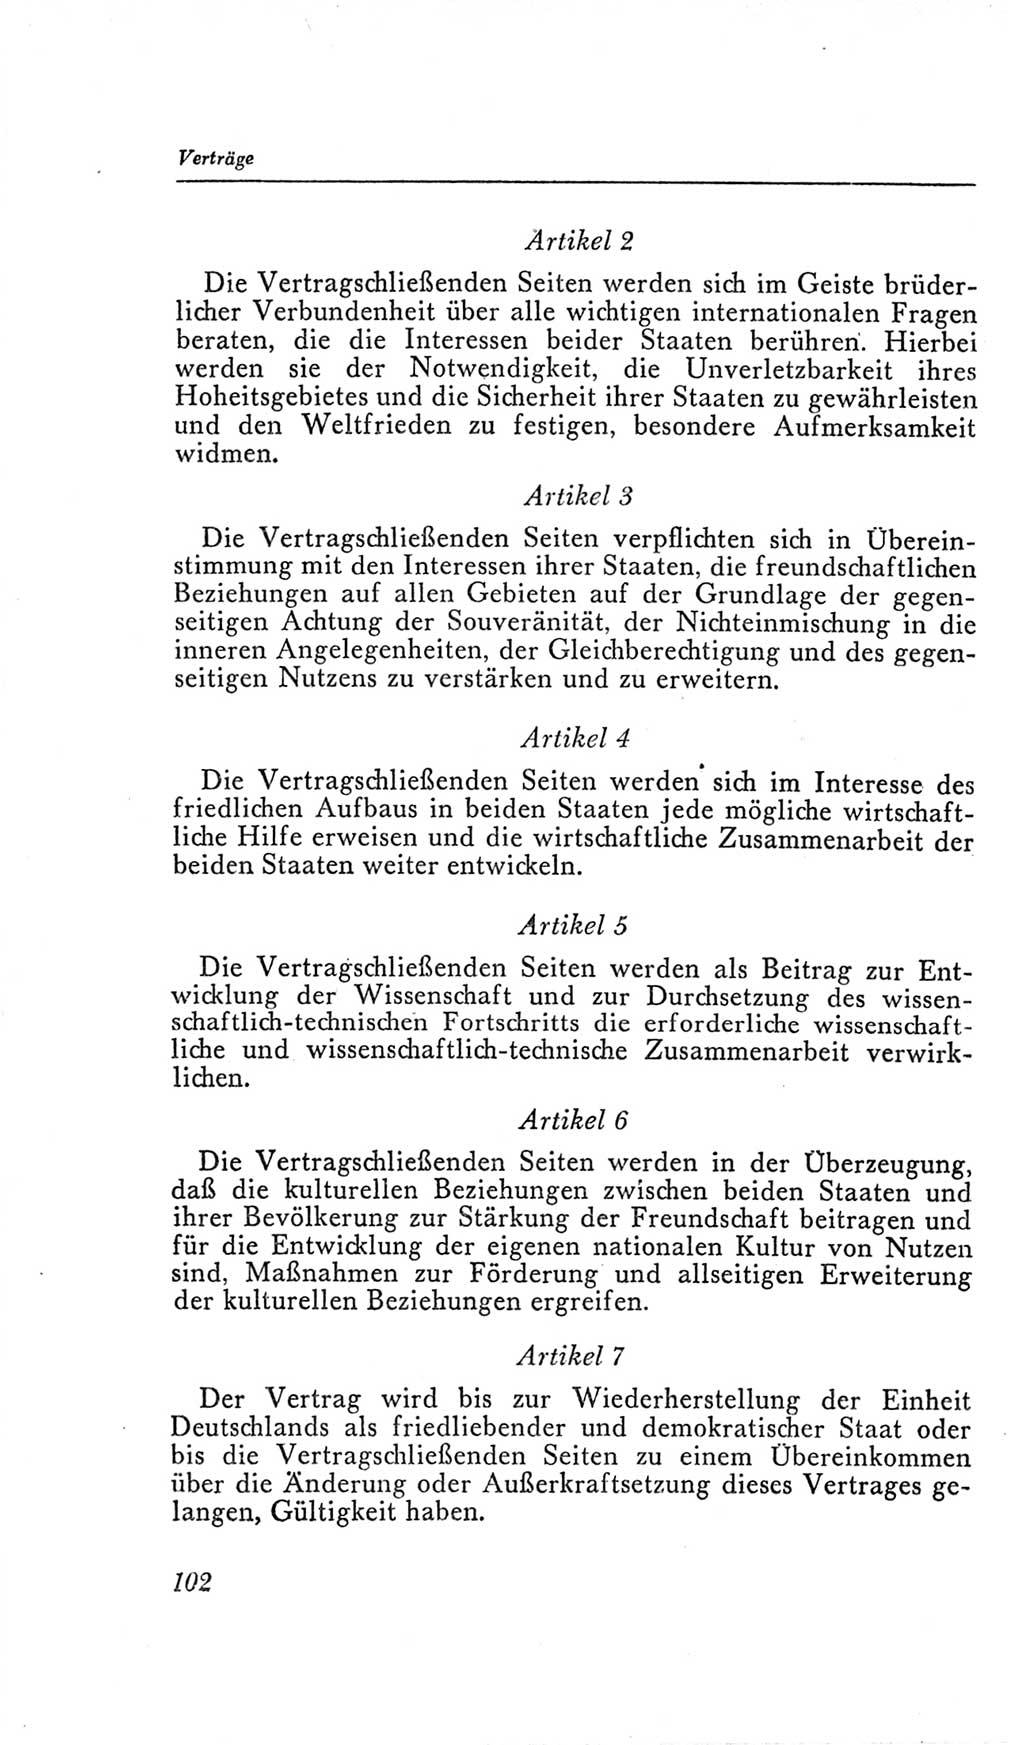 Handbuch der Volkskammer (VK) der Deutschen Demokratischen Republik (DDR), 2. Wahlperiode 1954-1958, Seite 102 (Hdb. VK. DDR, 2. WP. 1954-1958, S. 102)